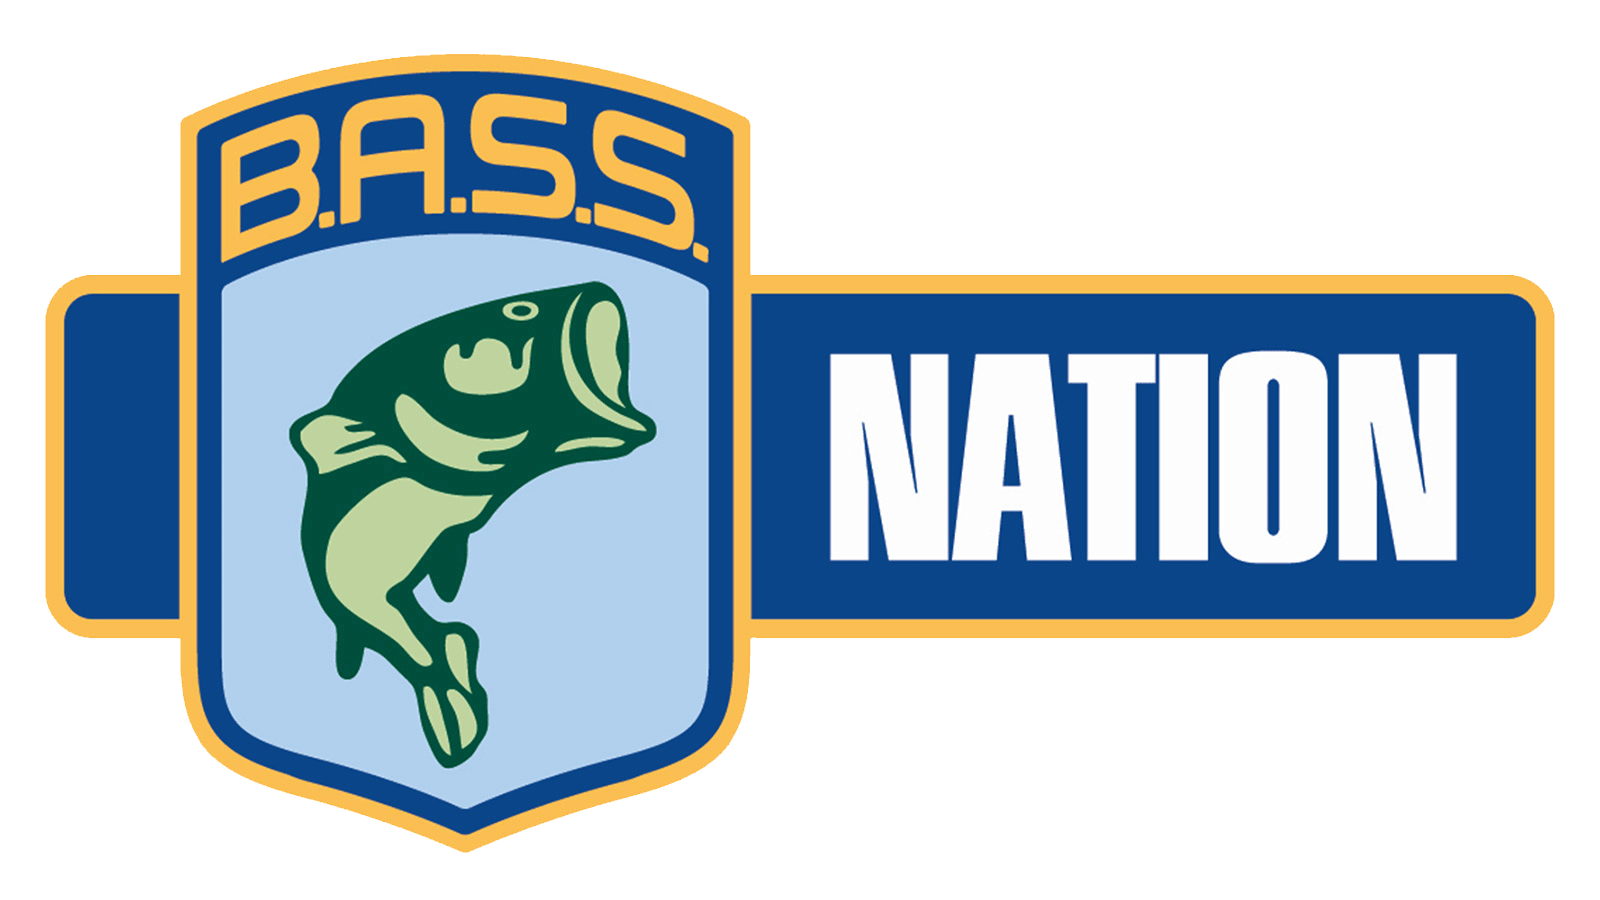 Kentucky BASS Nation